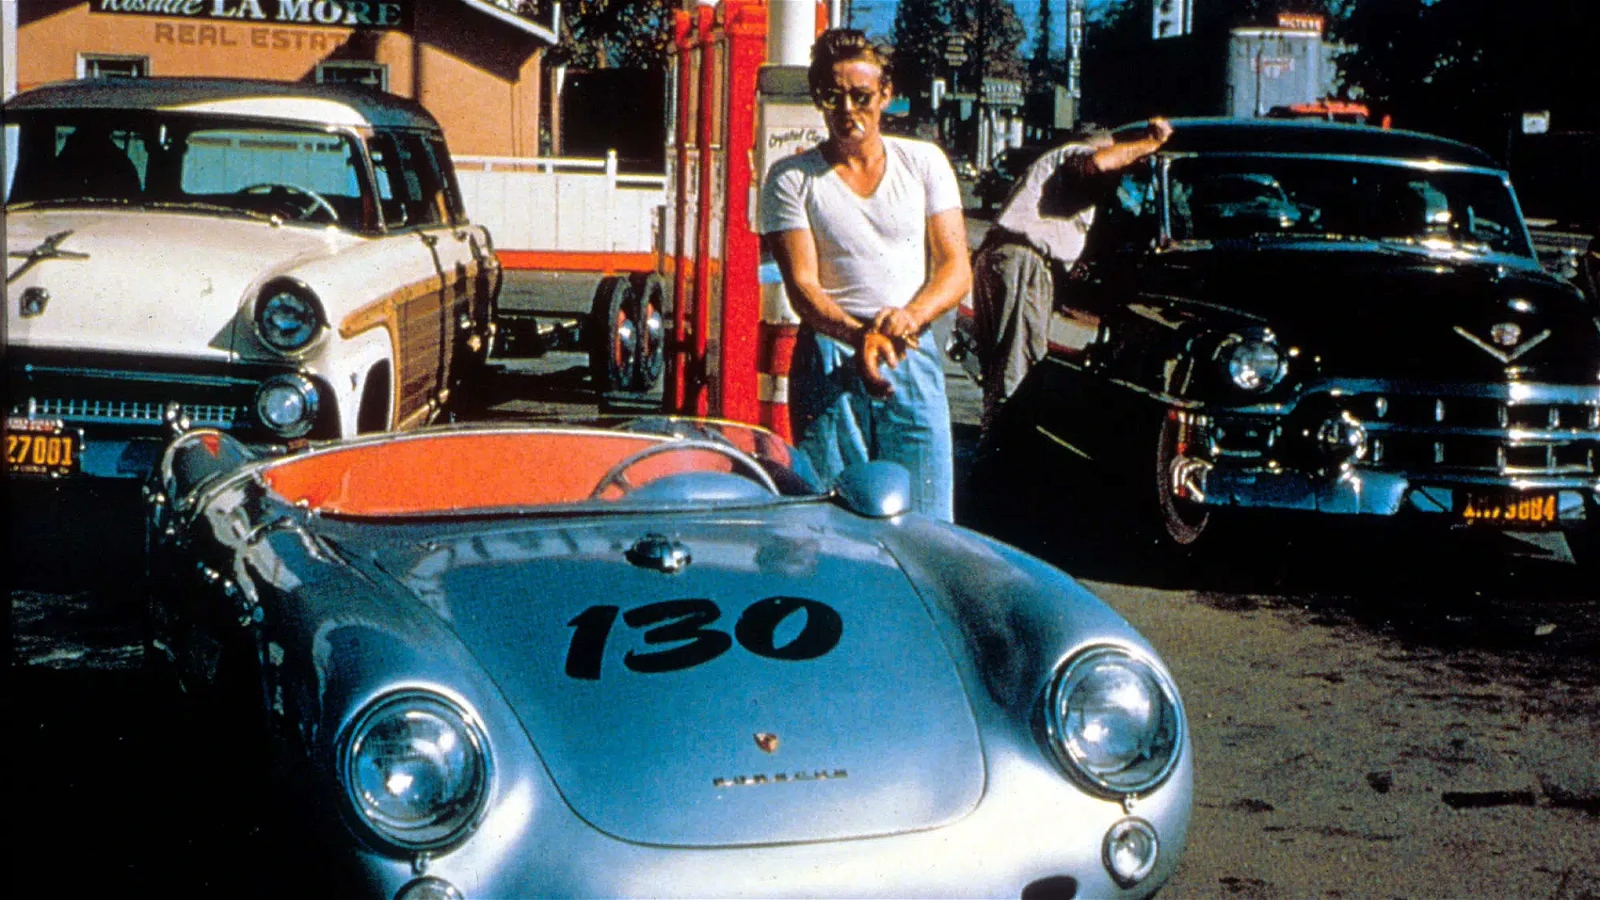 James Dean with his Porsche